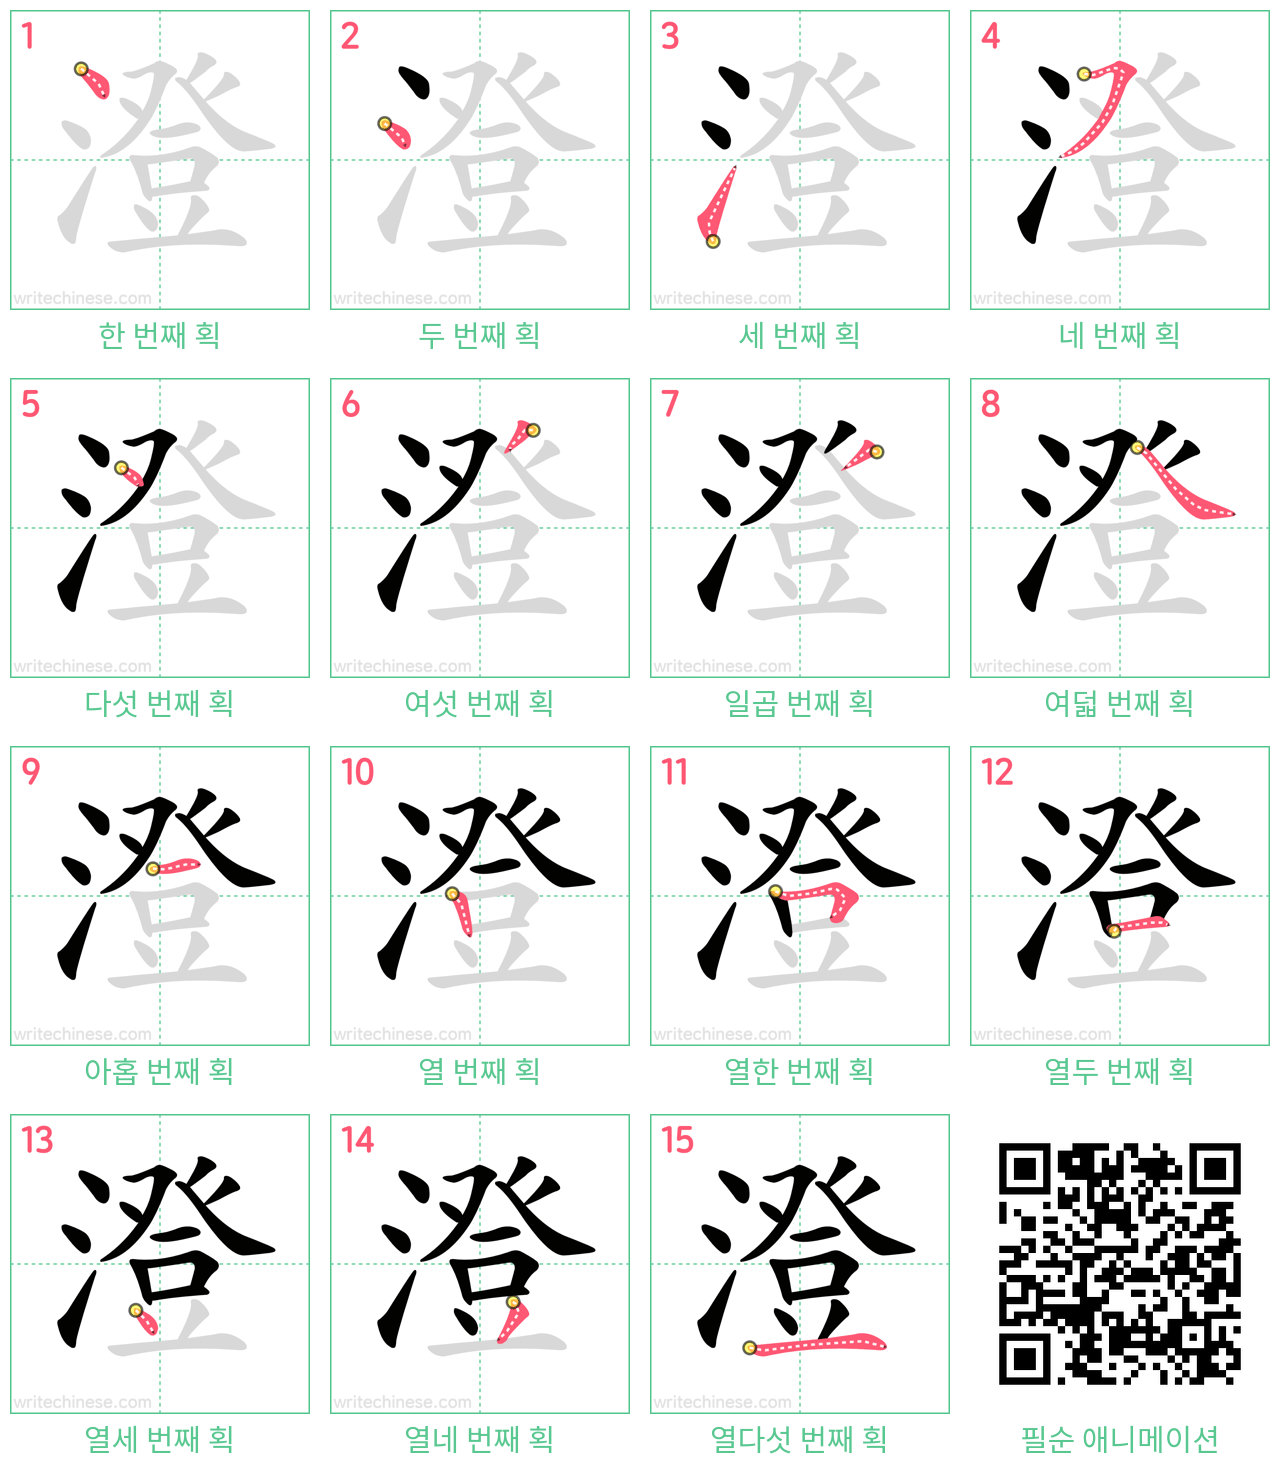 澄 step-by-step stroke order diagrams